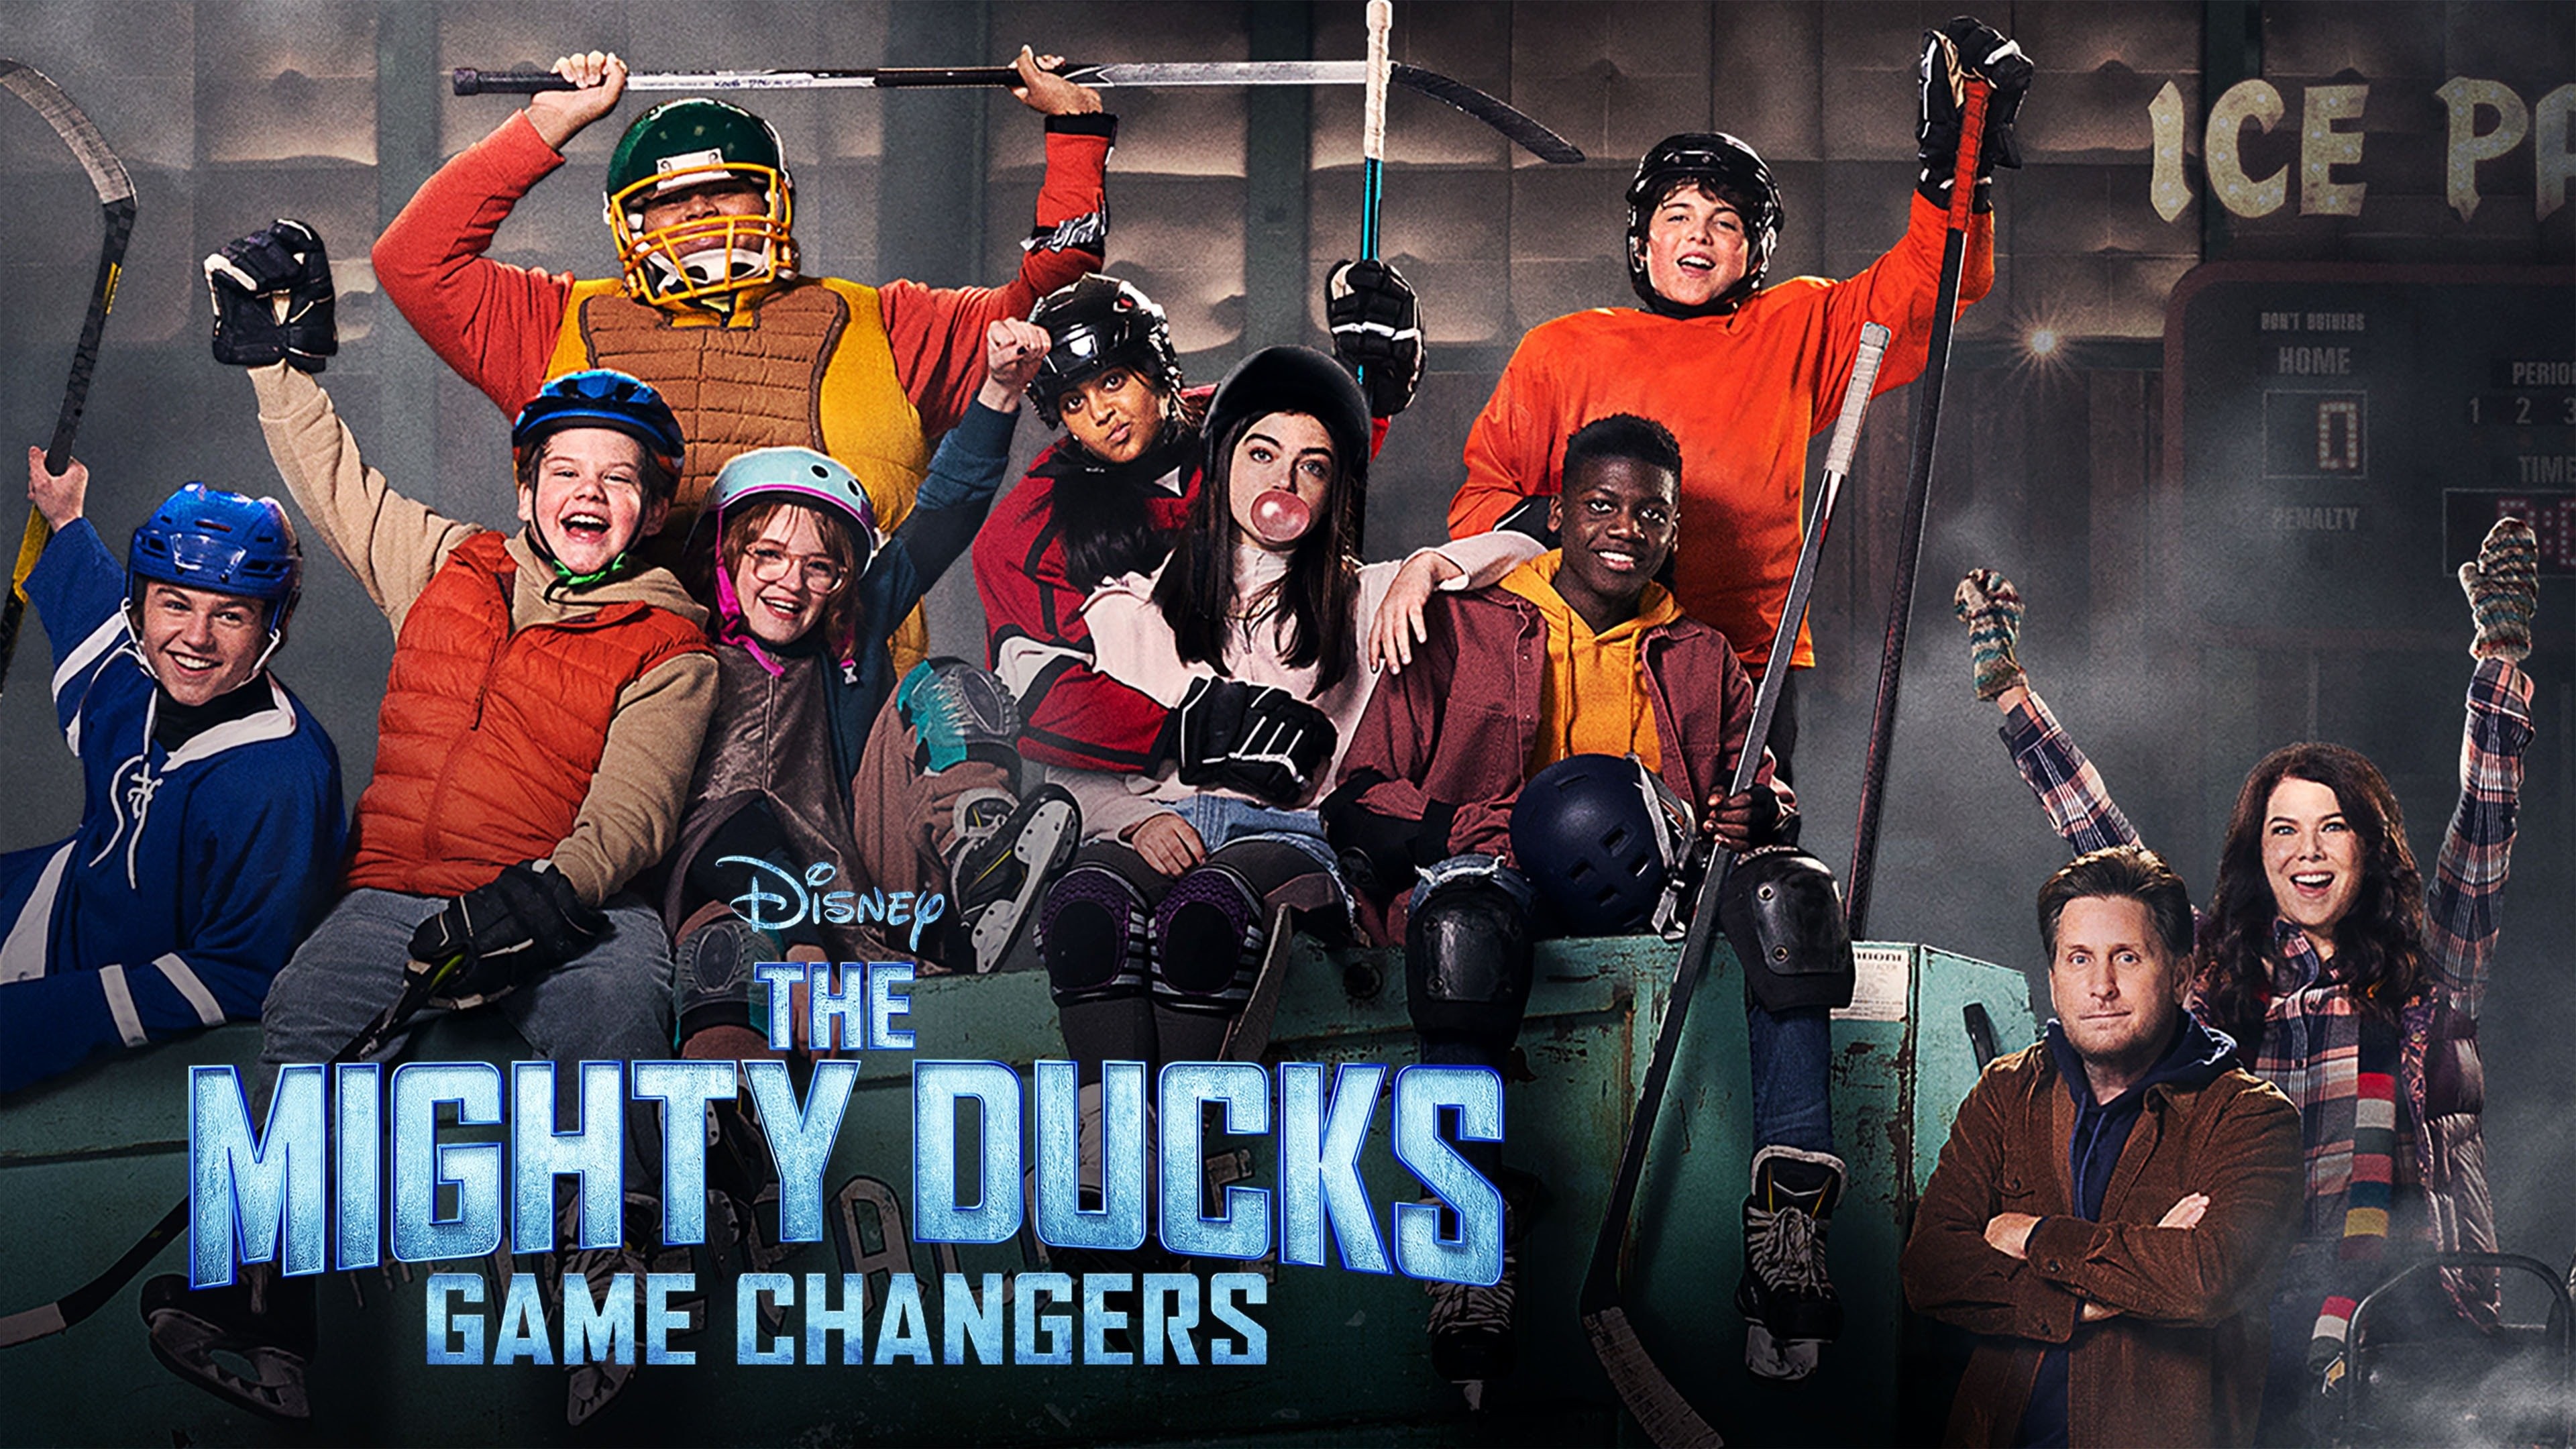 Watch: Lauren Graham directs new 'Mighty Ducks' episode 